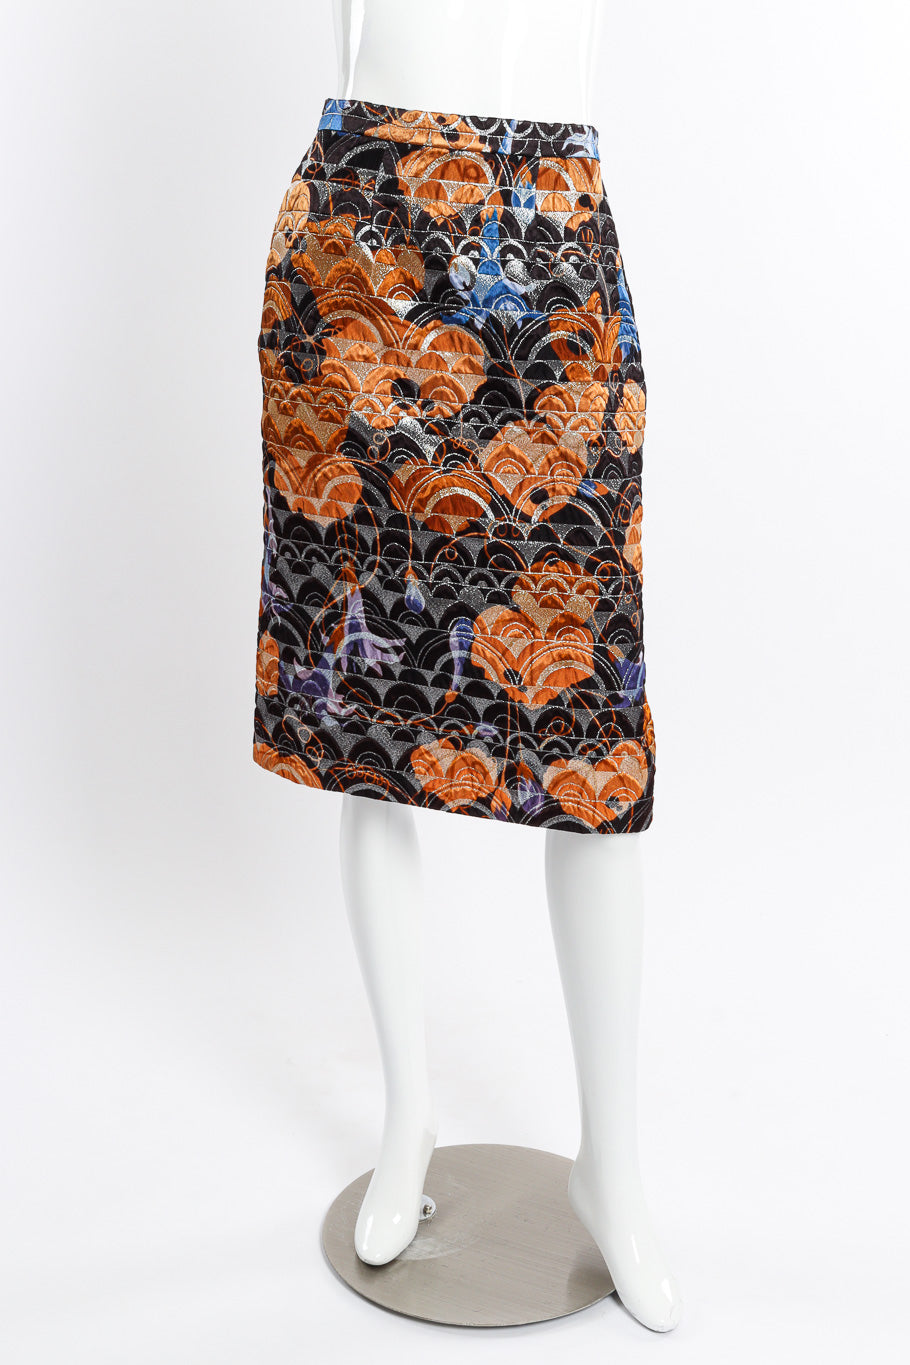 Vintage Mink Cuff Jacket and Skirt Set skirt front on mannequin @recessla